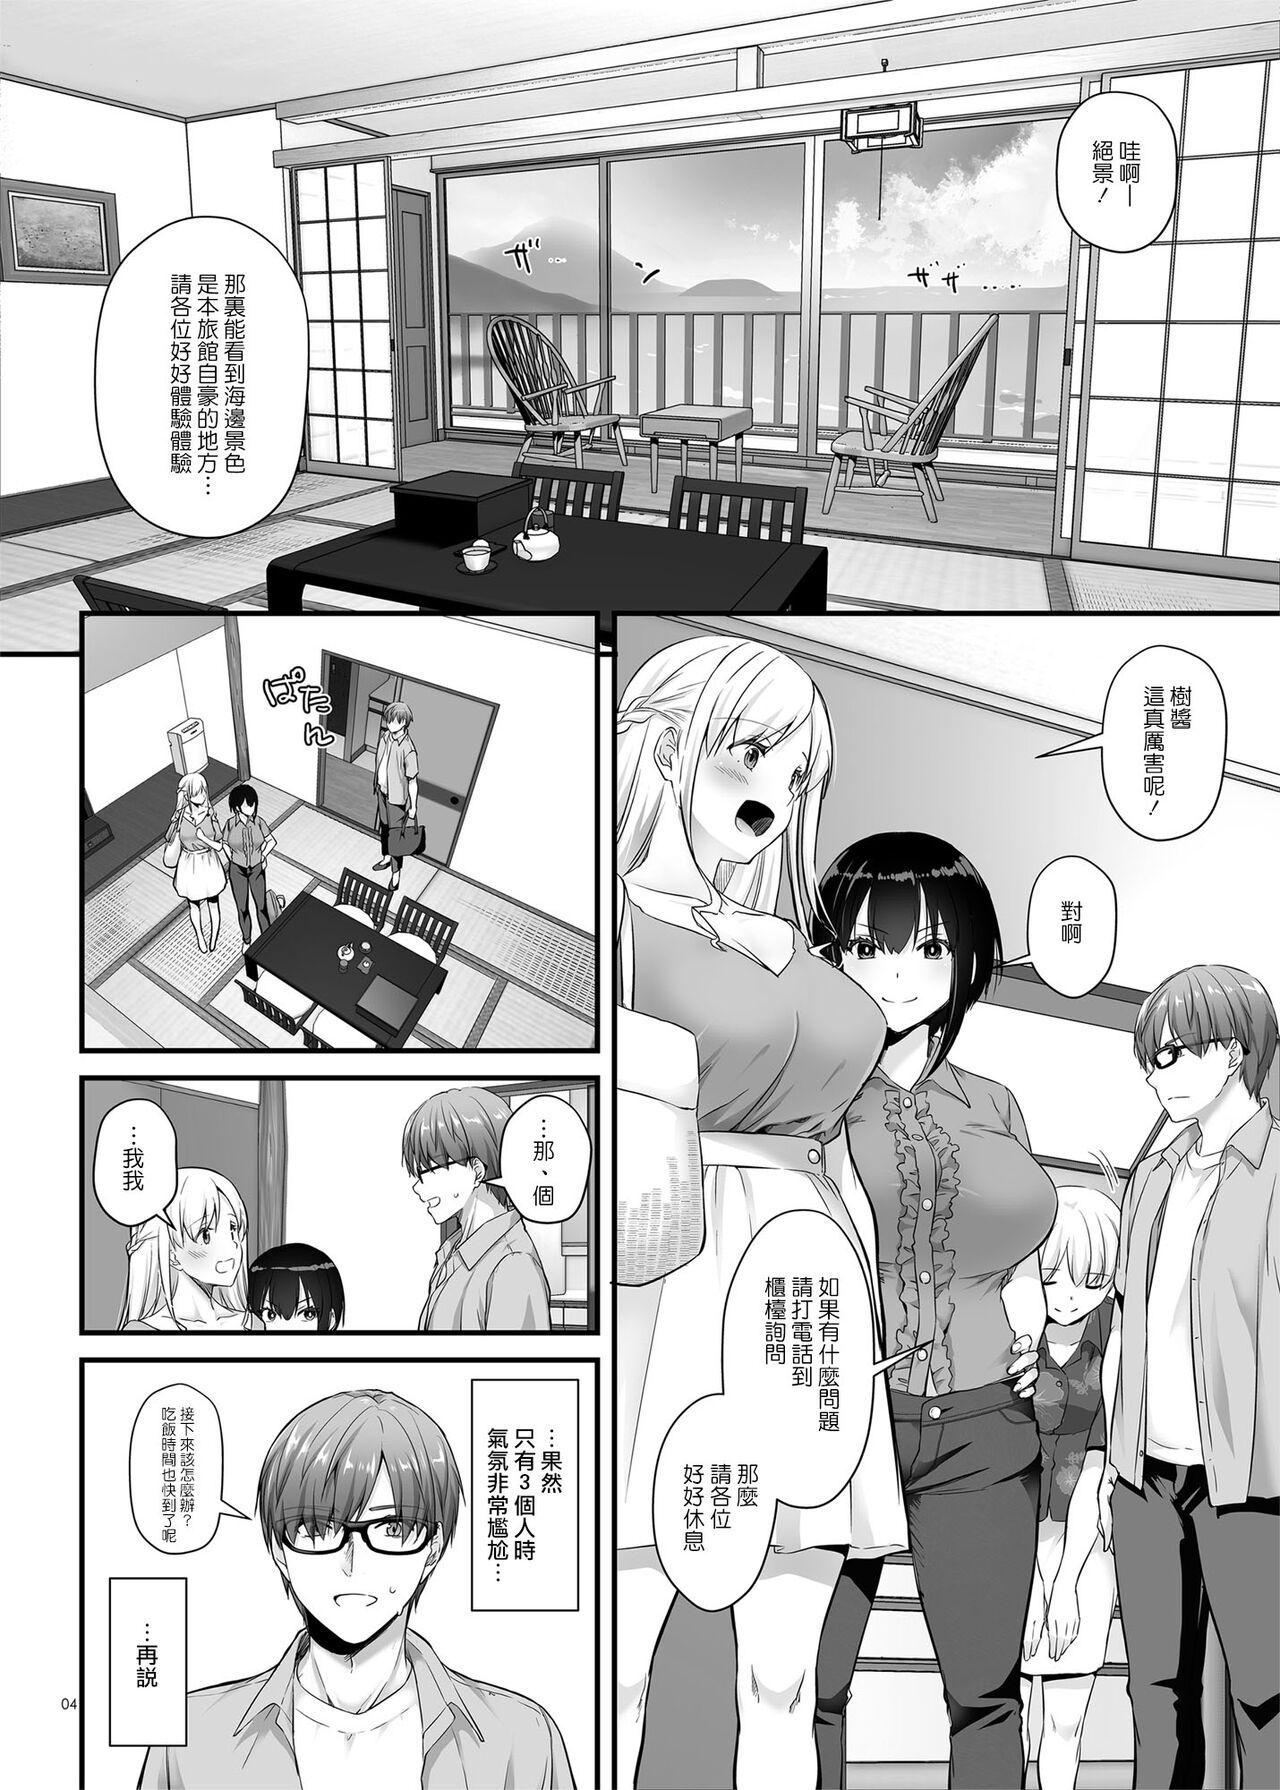 Retro Haramaseya 3 DLO-22 - Original Realitykings - Page 4